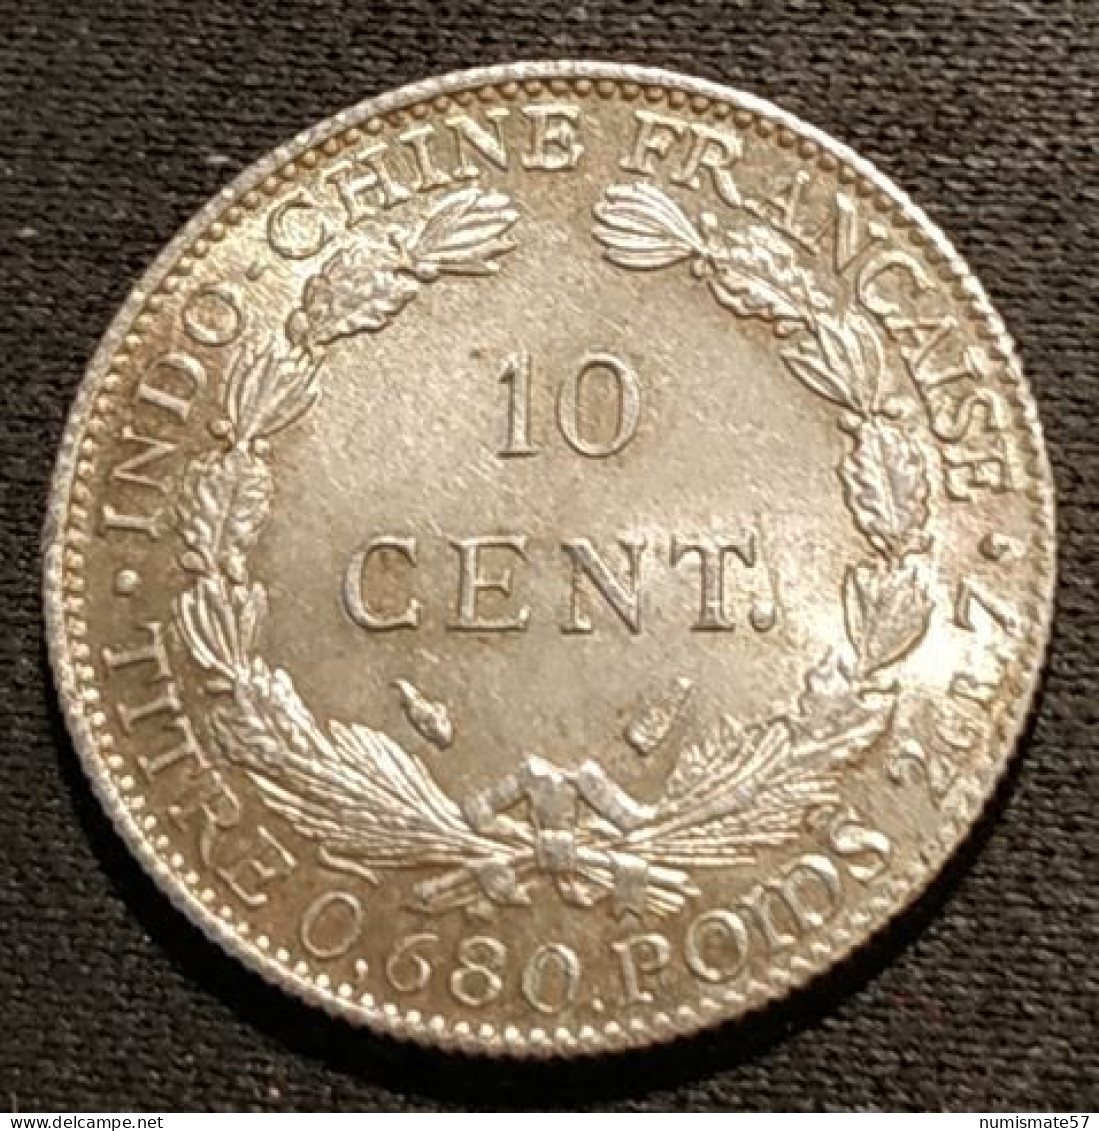 Qualité - INDOCHINE - 10 CENTIMES 1937 - Argent - Silver - KM 16.2 - Französisch-Indochina